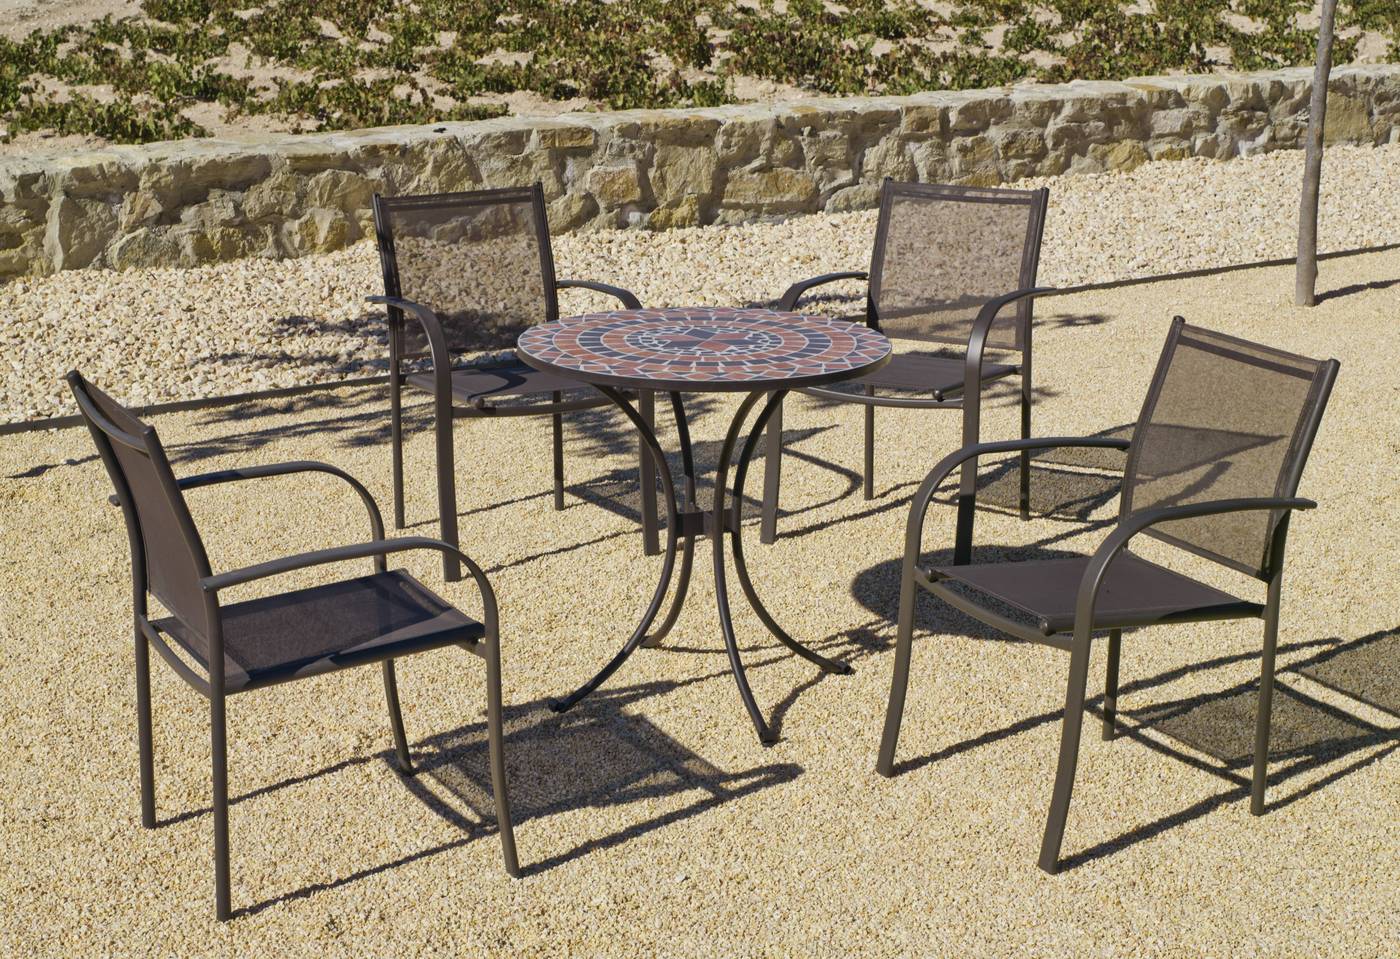 Conjunto para jardín y terraza de acero: 1 mesa de acero forjado con panel mosaico + 4 sillones de acero inoxidable y textilen